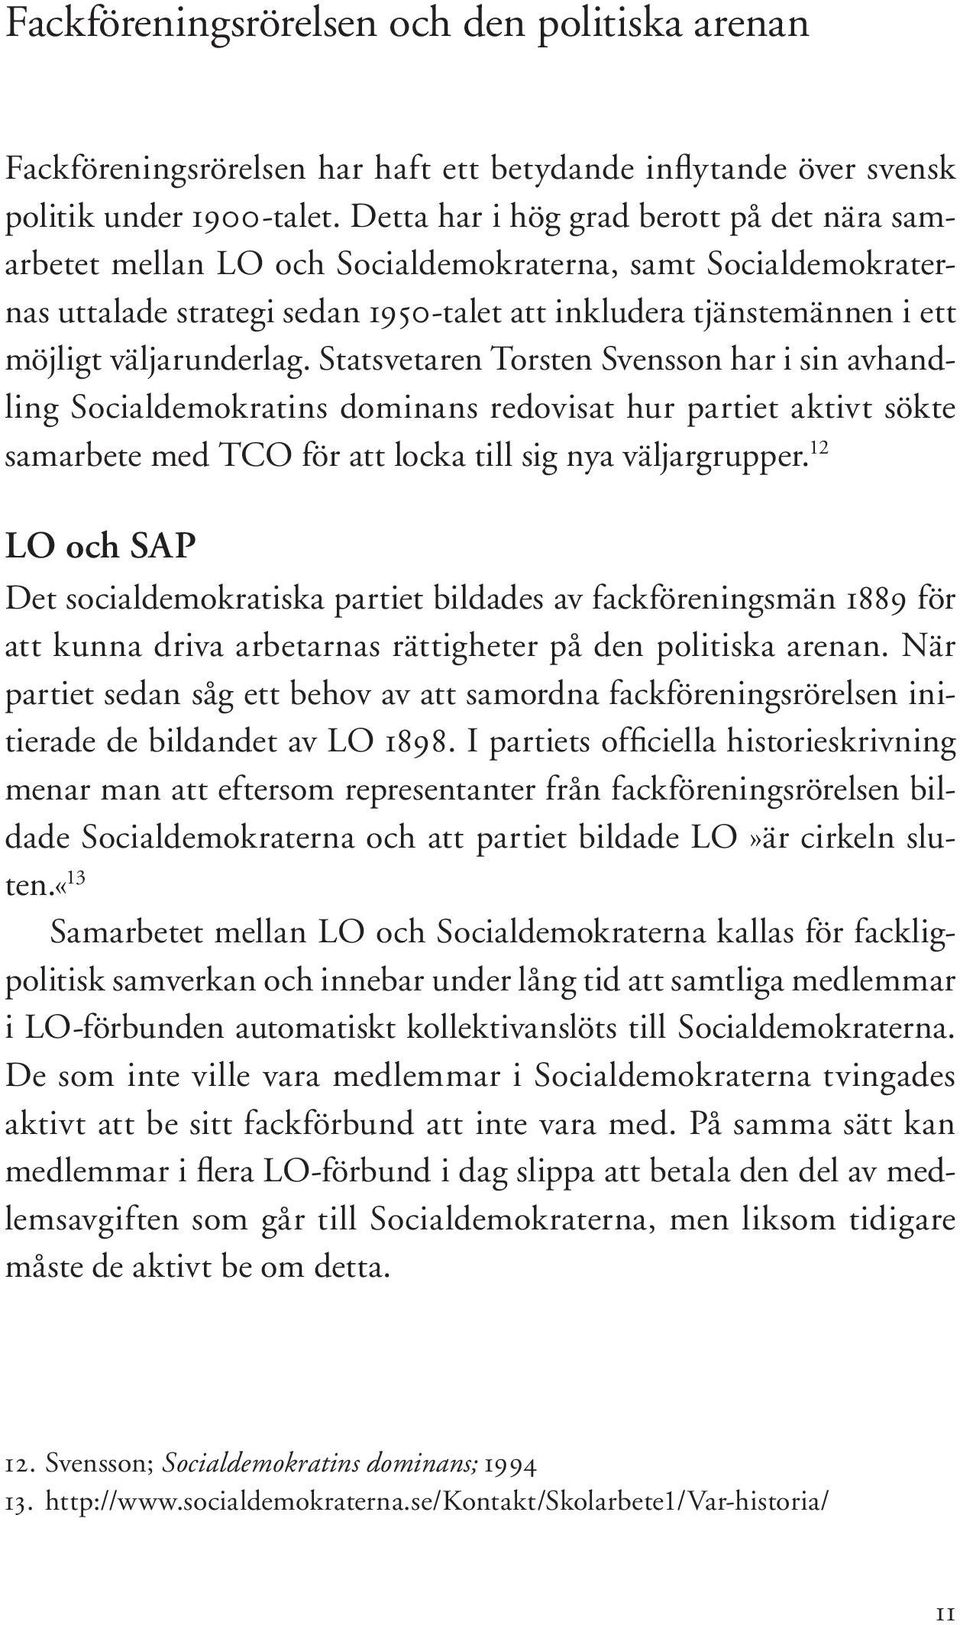 väljarunderlag. Statsvetaren Torsten Svensson har i sin avhandling Socialdemokratins dominans redovisat hur partiet aktivt sökte samarbete med TCO för att locka till sig nya väljargrupper.